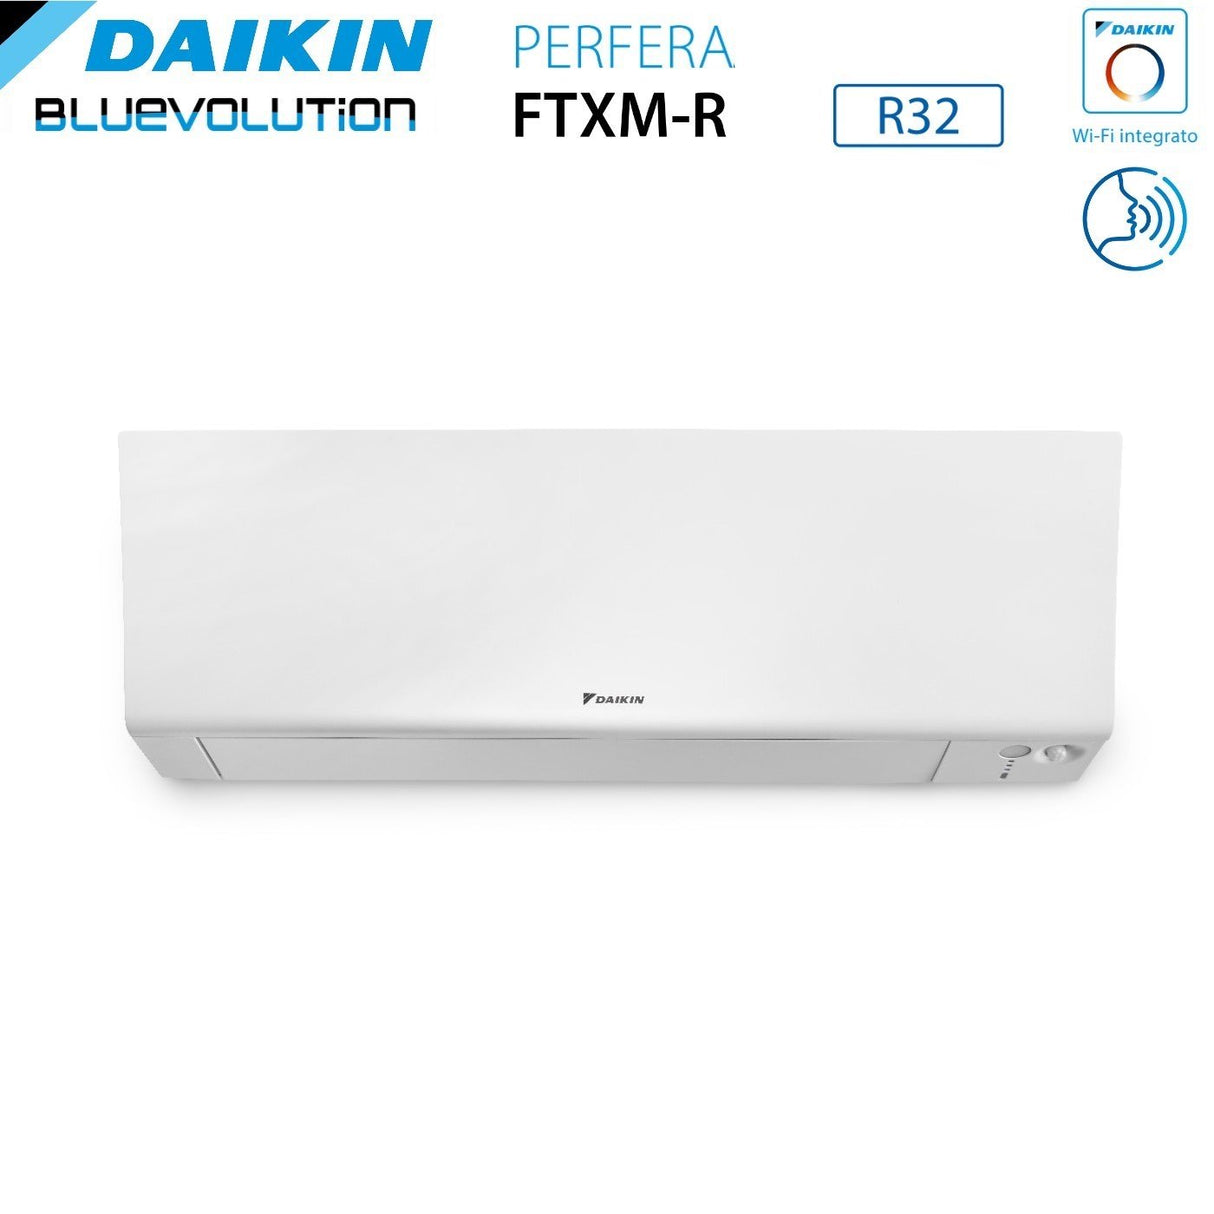 immagine-3-daikin-climatizzatore-condizionatore-daikin-bluevolution-quadri-split-inverter-serie-ftxmr-perfera-wall-791518-con-4mxm80a-r-32-wi-fi-integrato-700090001500018000-garanzia-italiana